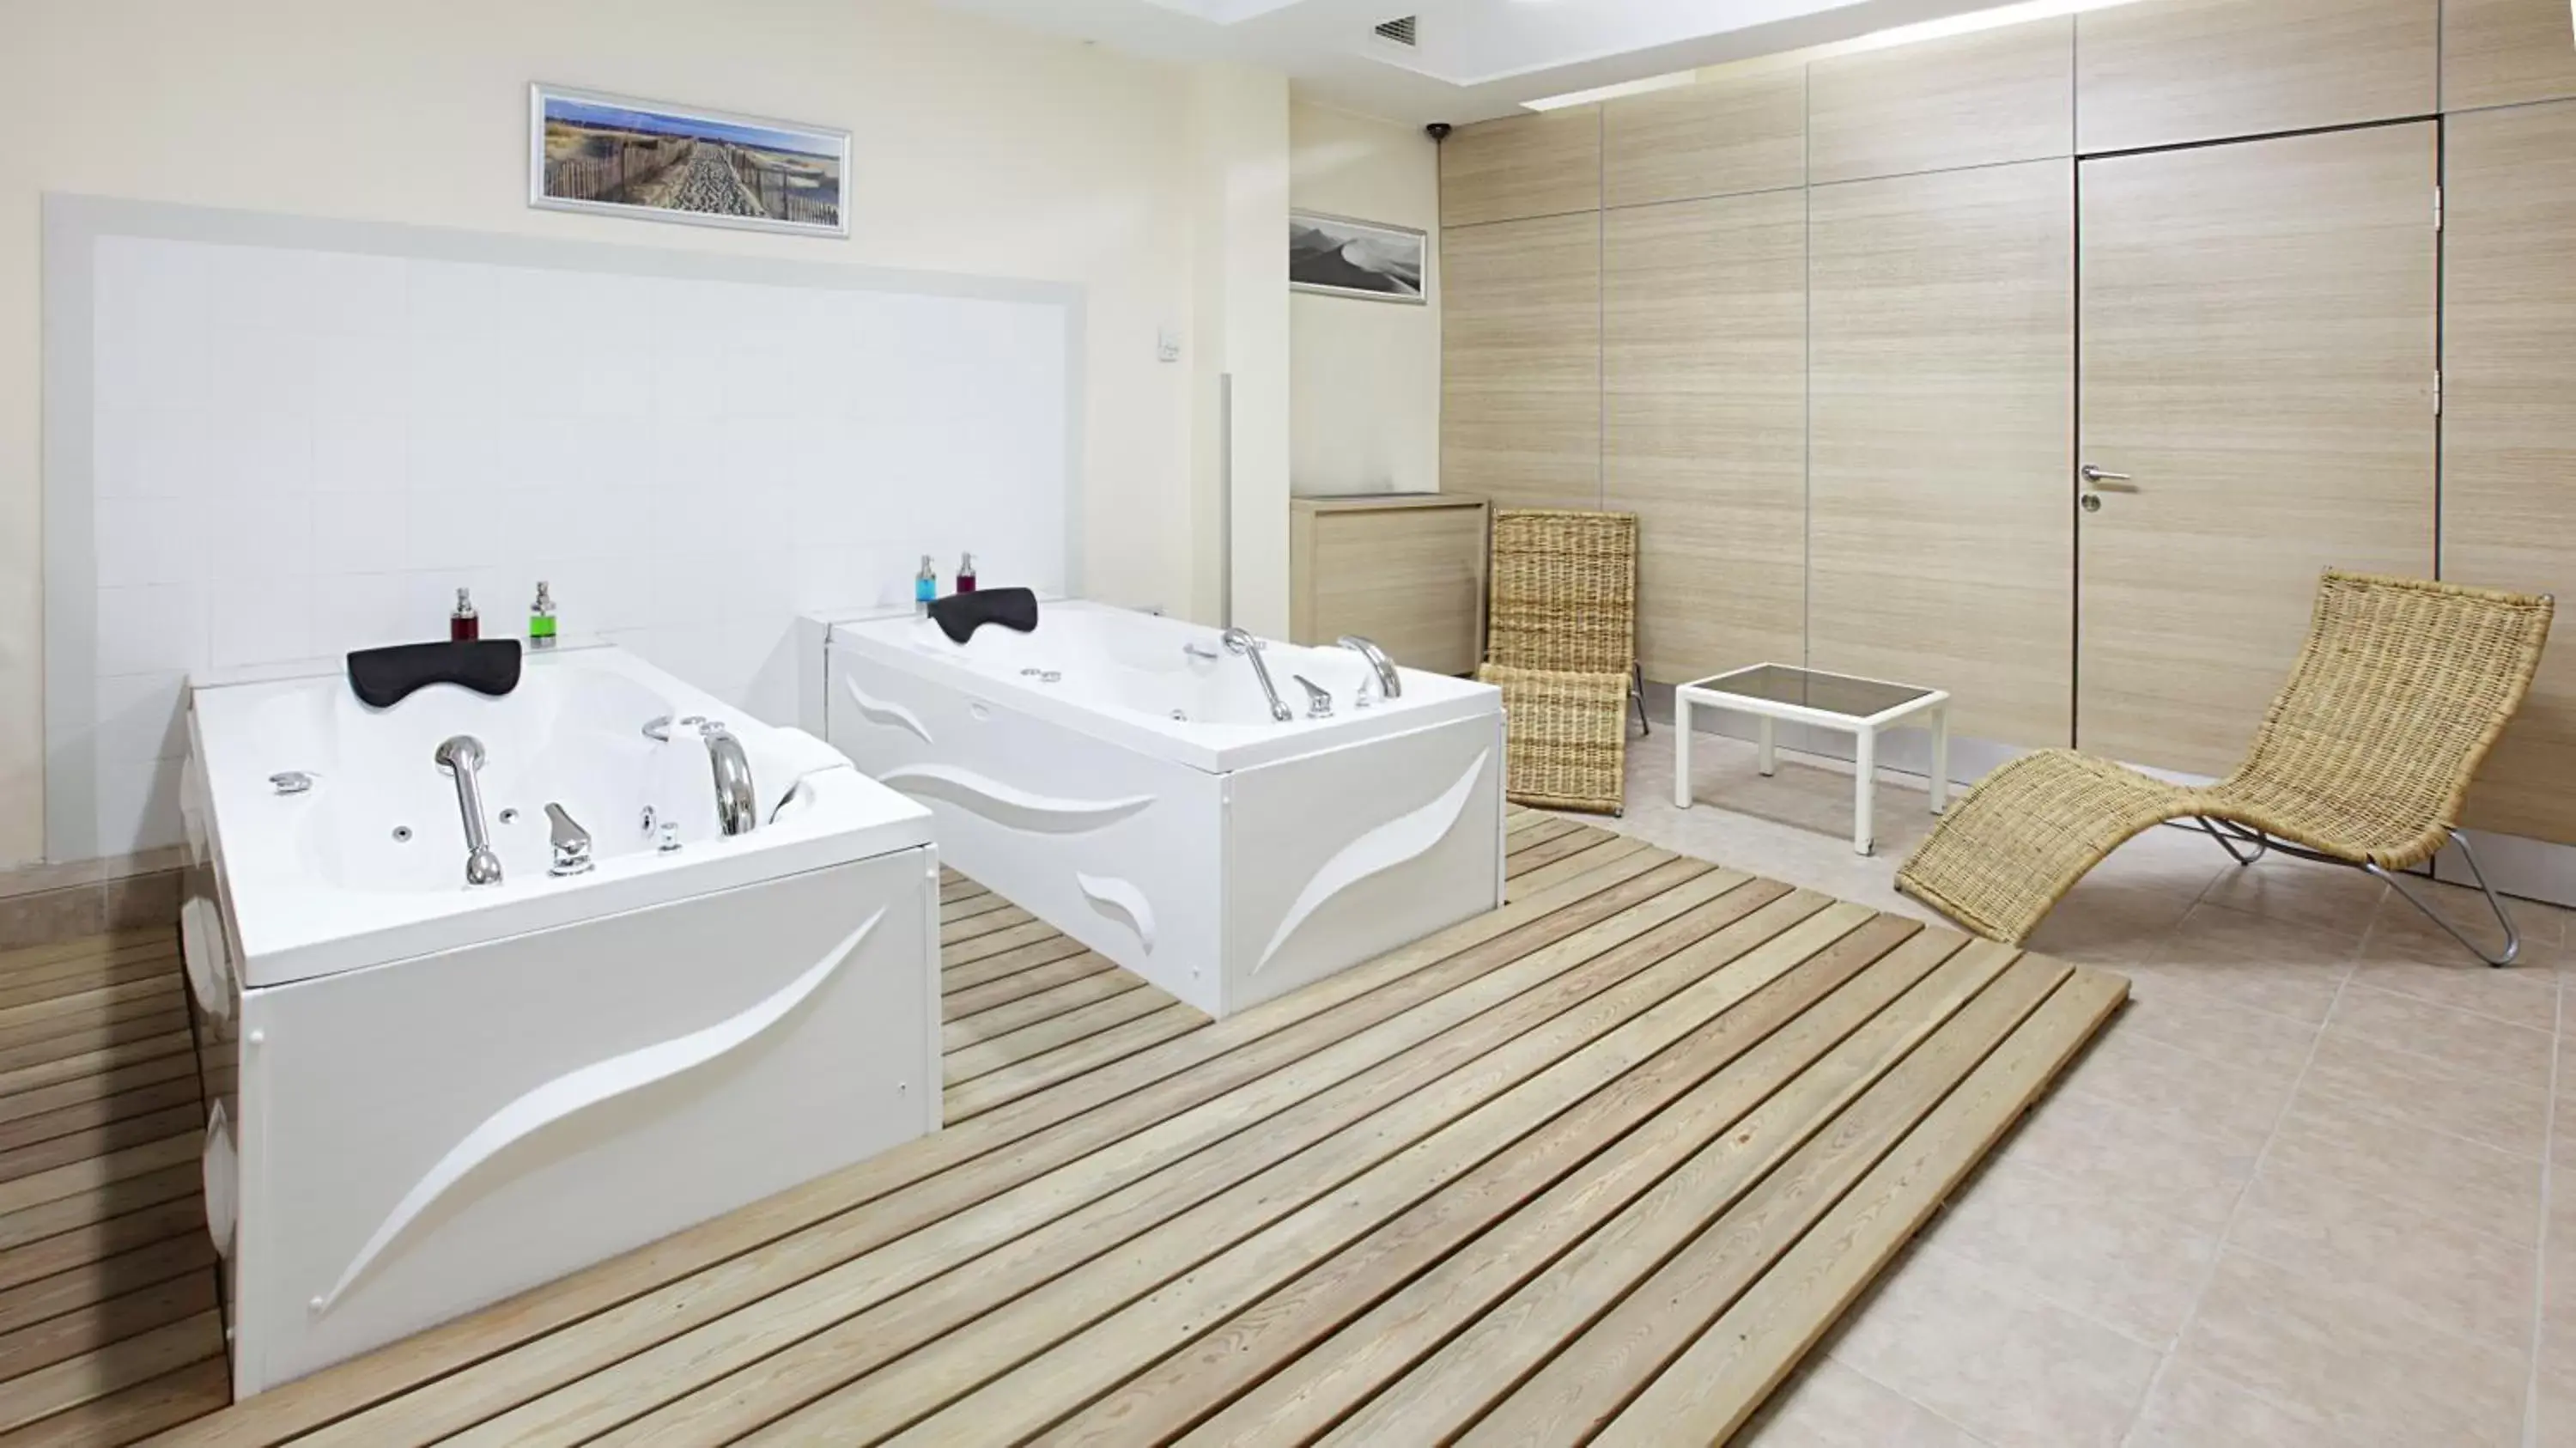 Spa and wellness centre/facilities, Bathroom in Gallery Residence & Hotel Nişantaşı